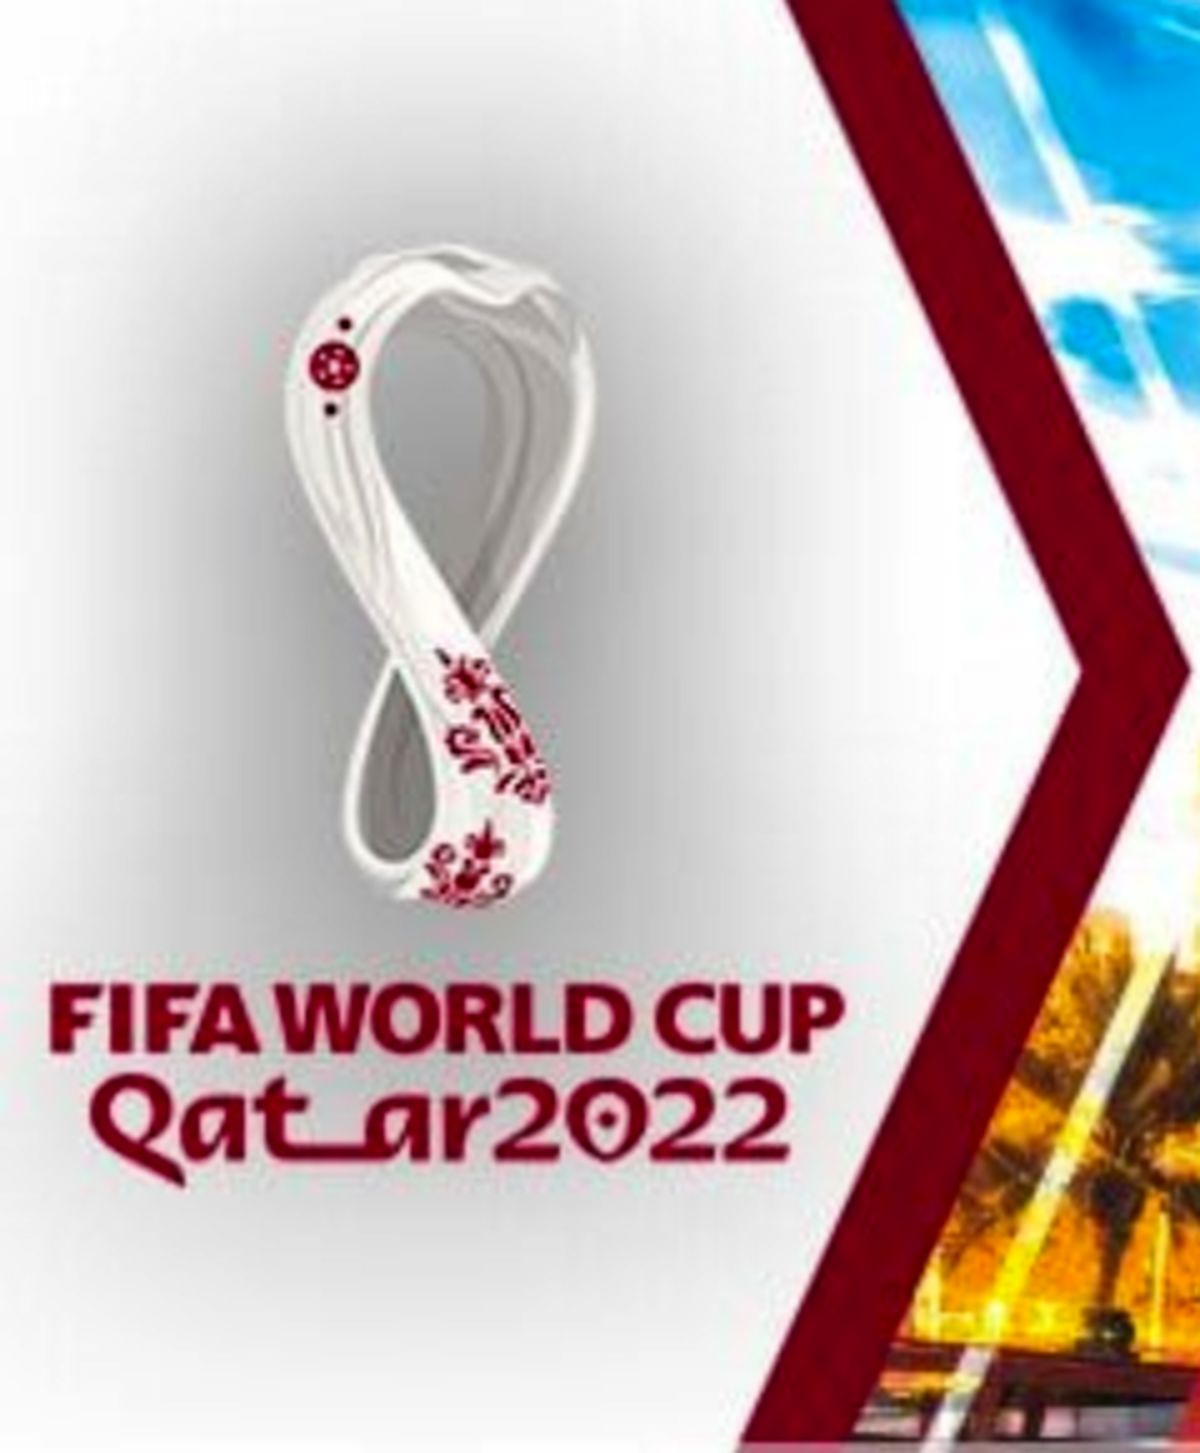 صدور رایگان روادید برای متقاضیان سفر به ایران در جریان جام جهانی ۲۰۲۲